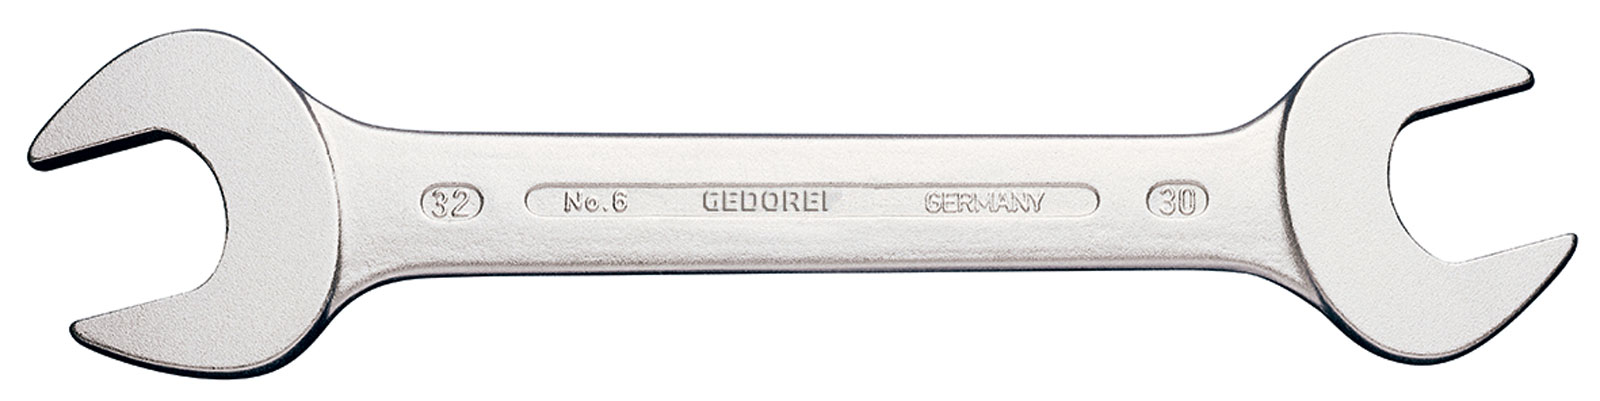 Picture of Doppelmaulschlüssel ähnlich DIN3110 3/4x7/8" Gedore